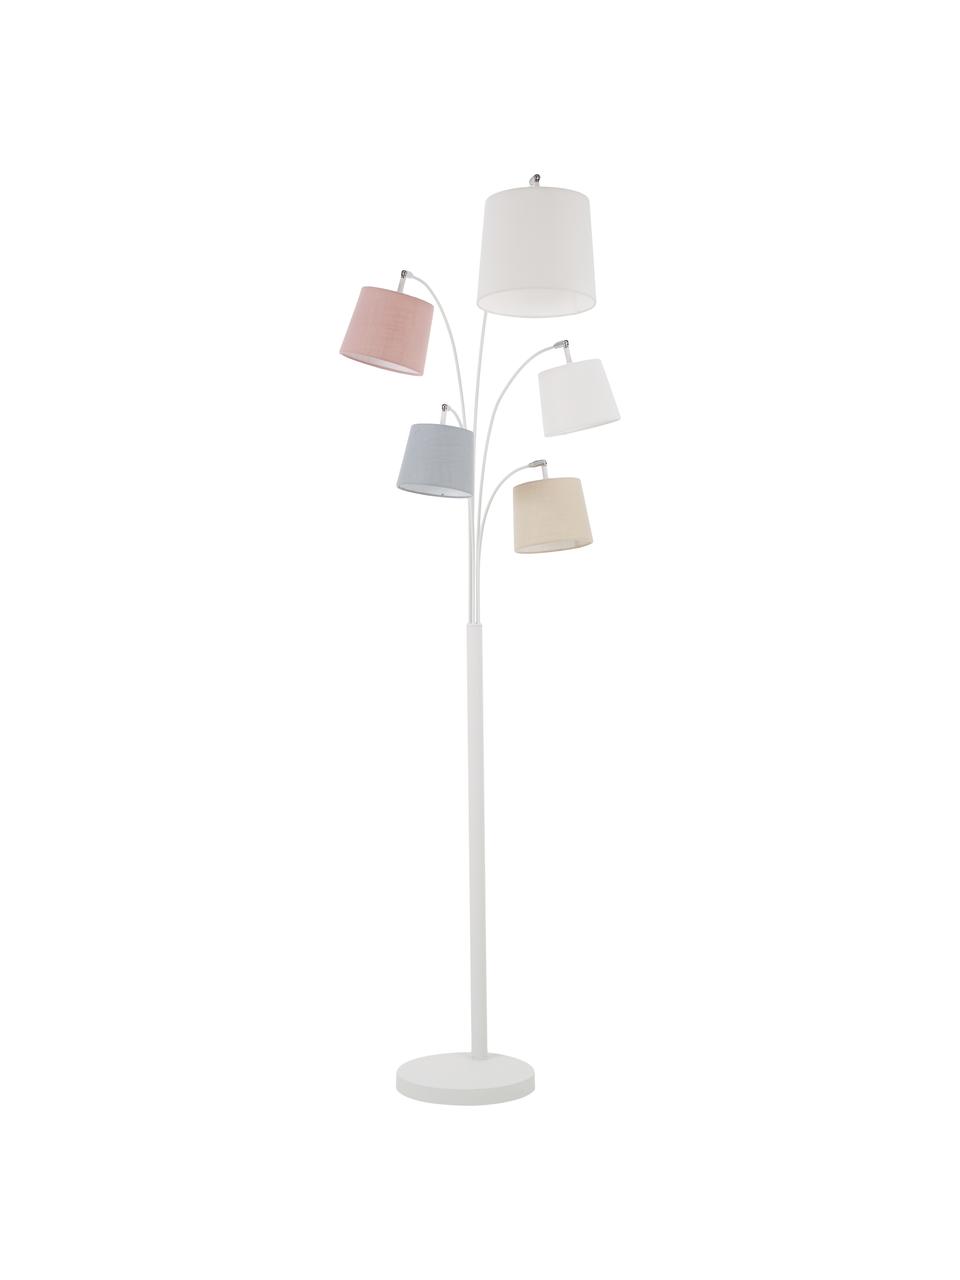 Velká nastavitelná oblouková lampa Foggy, Bílá, pastelové tóny, Š 80 cm, V 200 cm